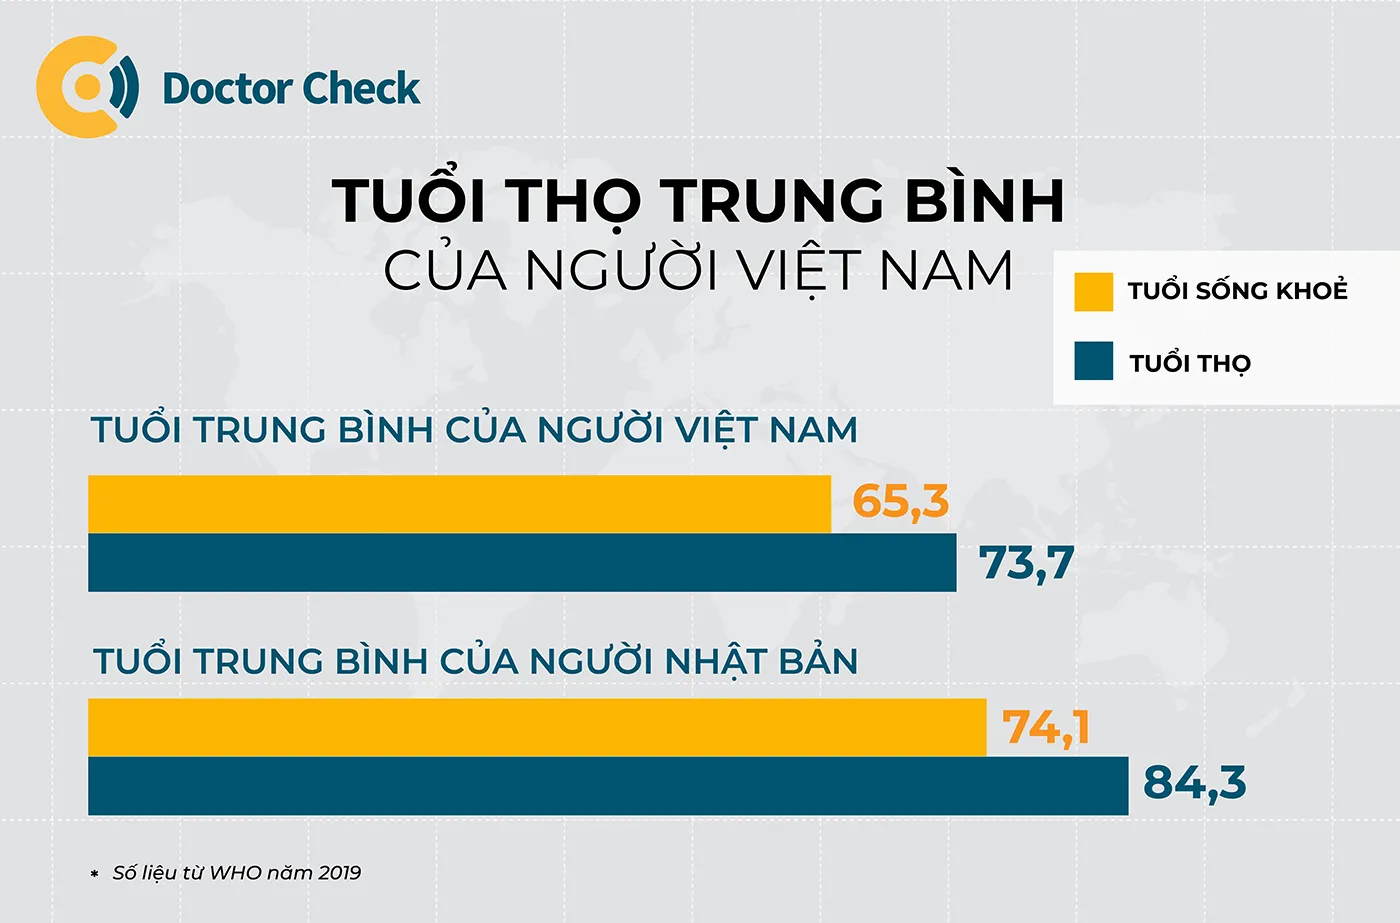 Tuổi thọ trung bình của người Việt Nam so với Nhật Bản